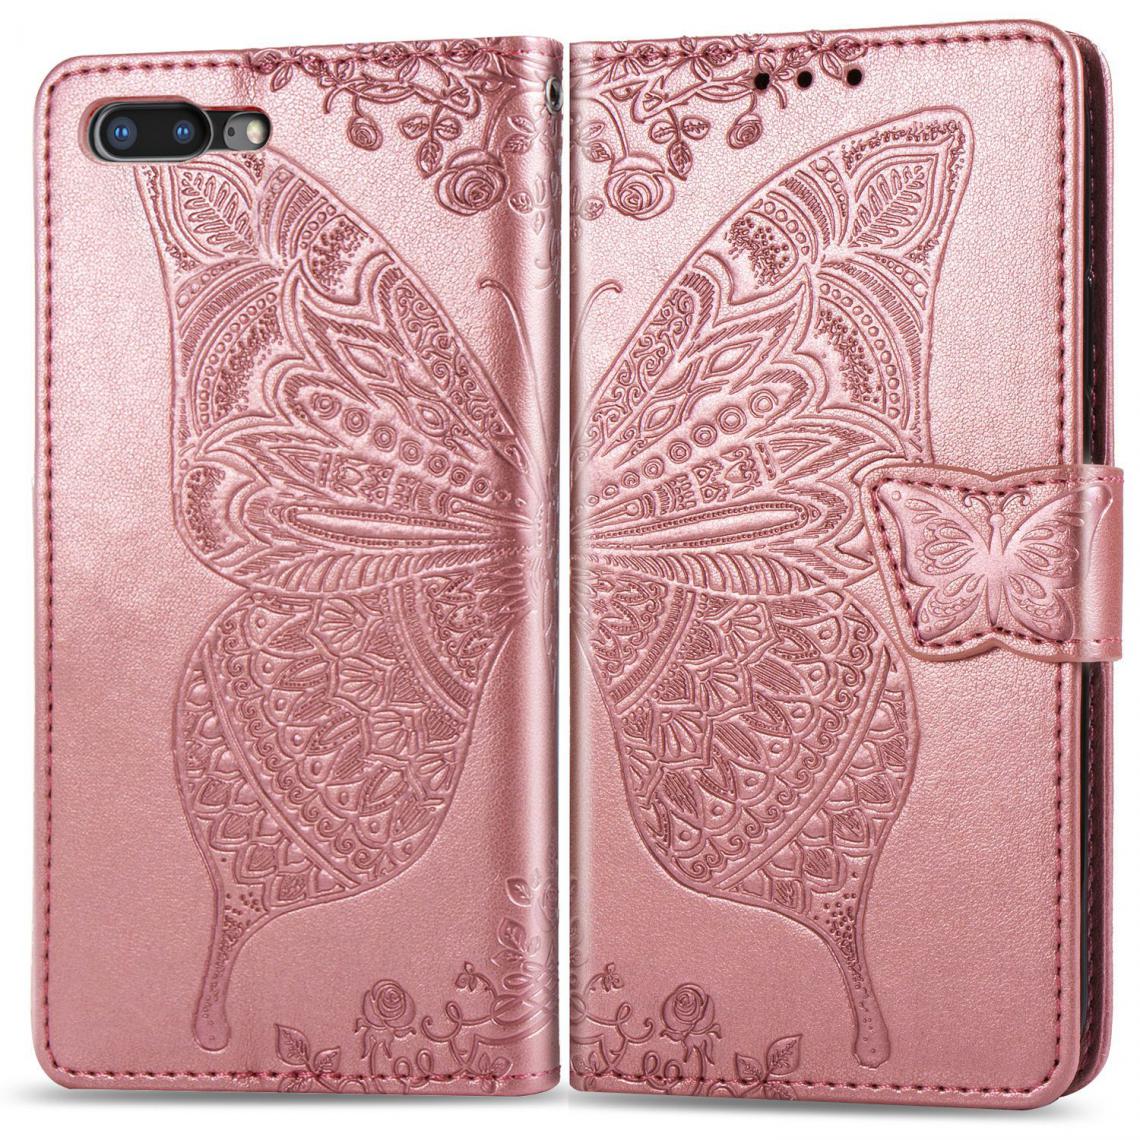 OtterBox - iPhone 7 Plus/8 Plus Housse Etui Coque de protection type portefeuille Papillon [Or Rose] - Coque, étui smartphone